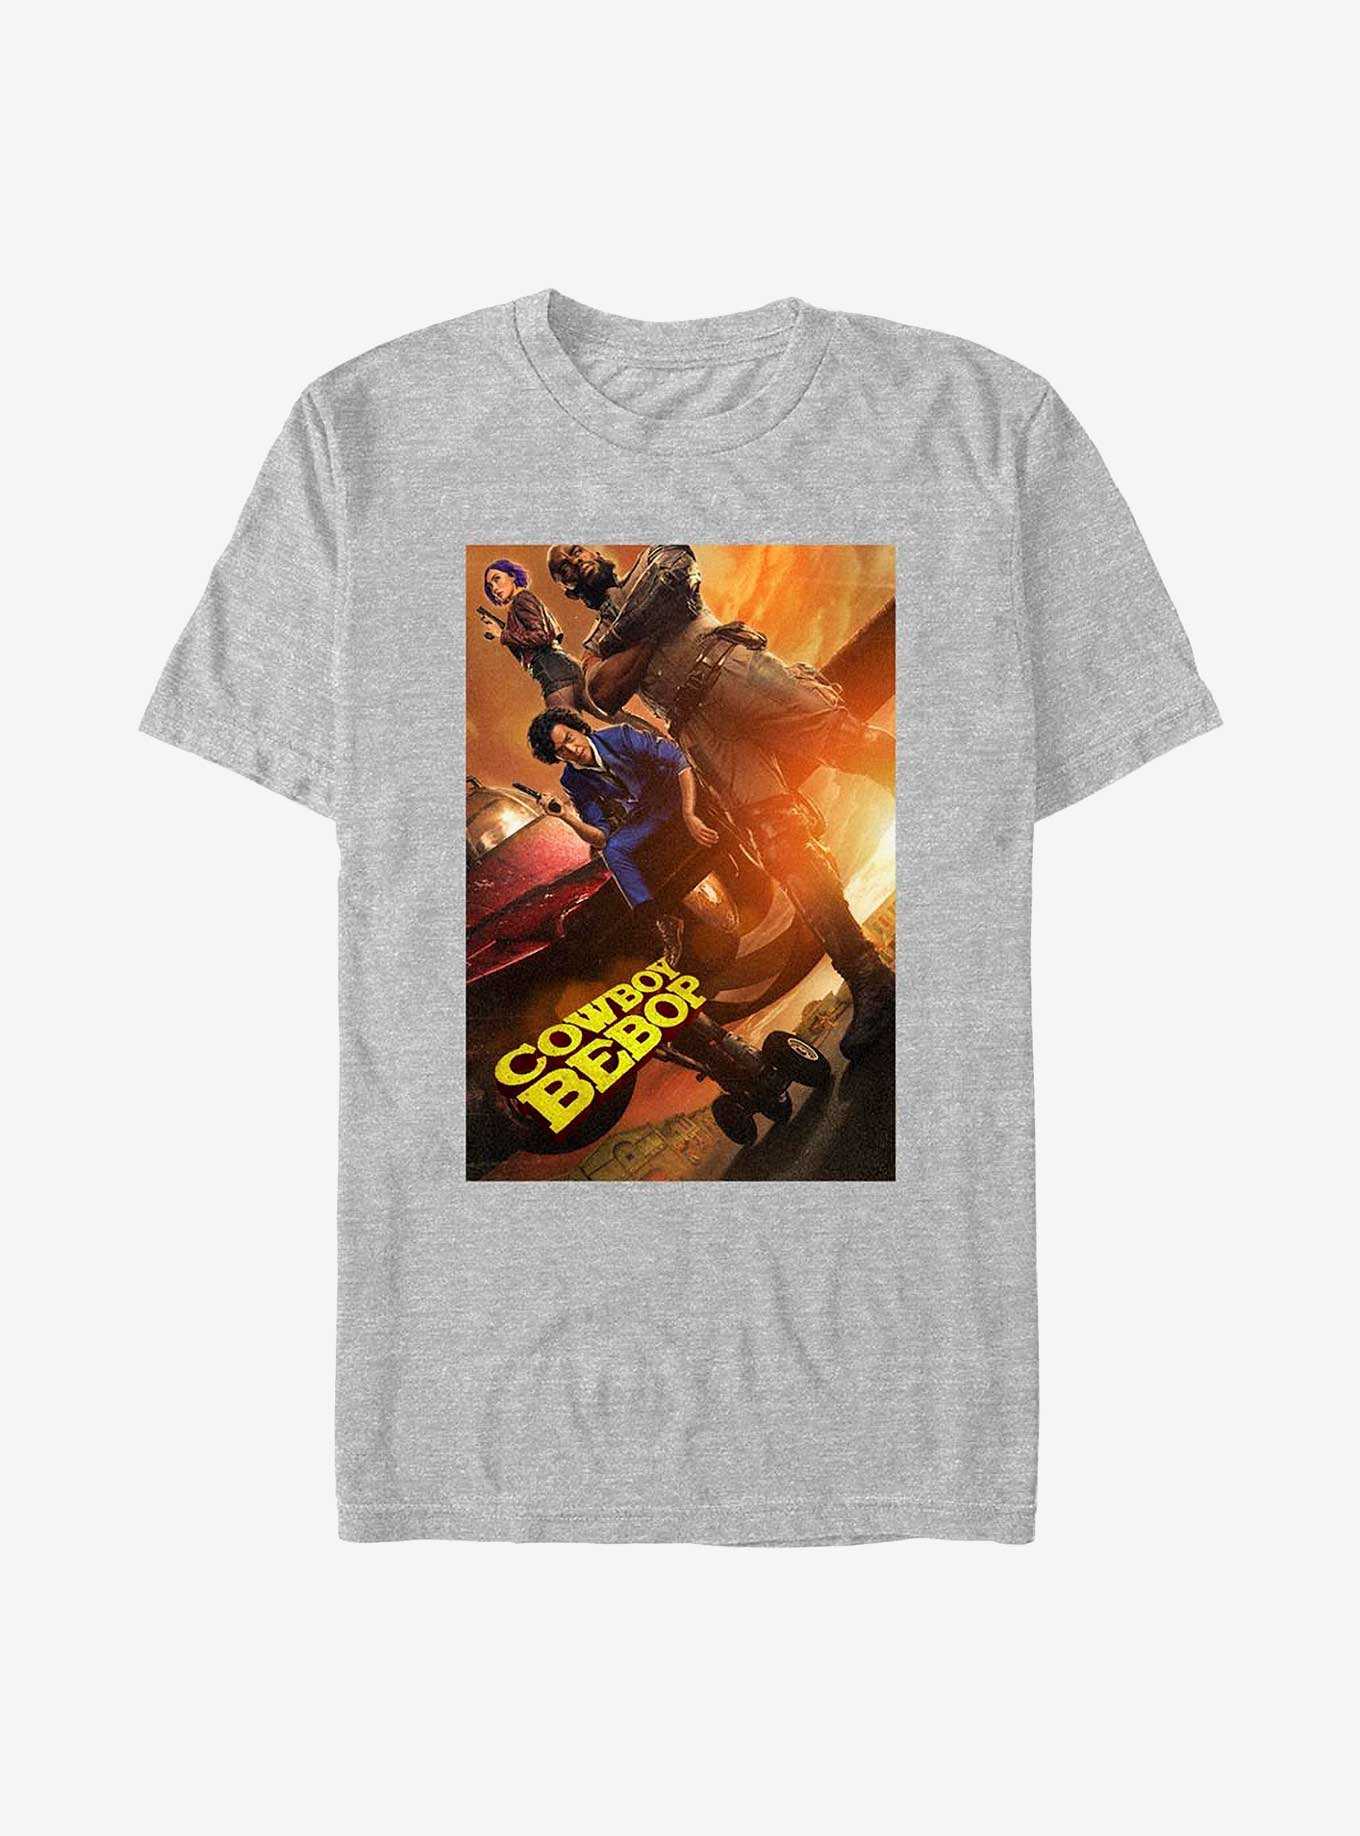 Cowboy Bebop Crew T-Shirt, , hi-res